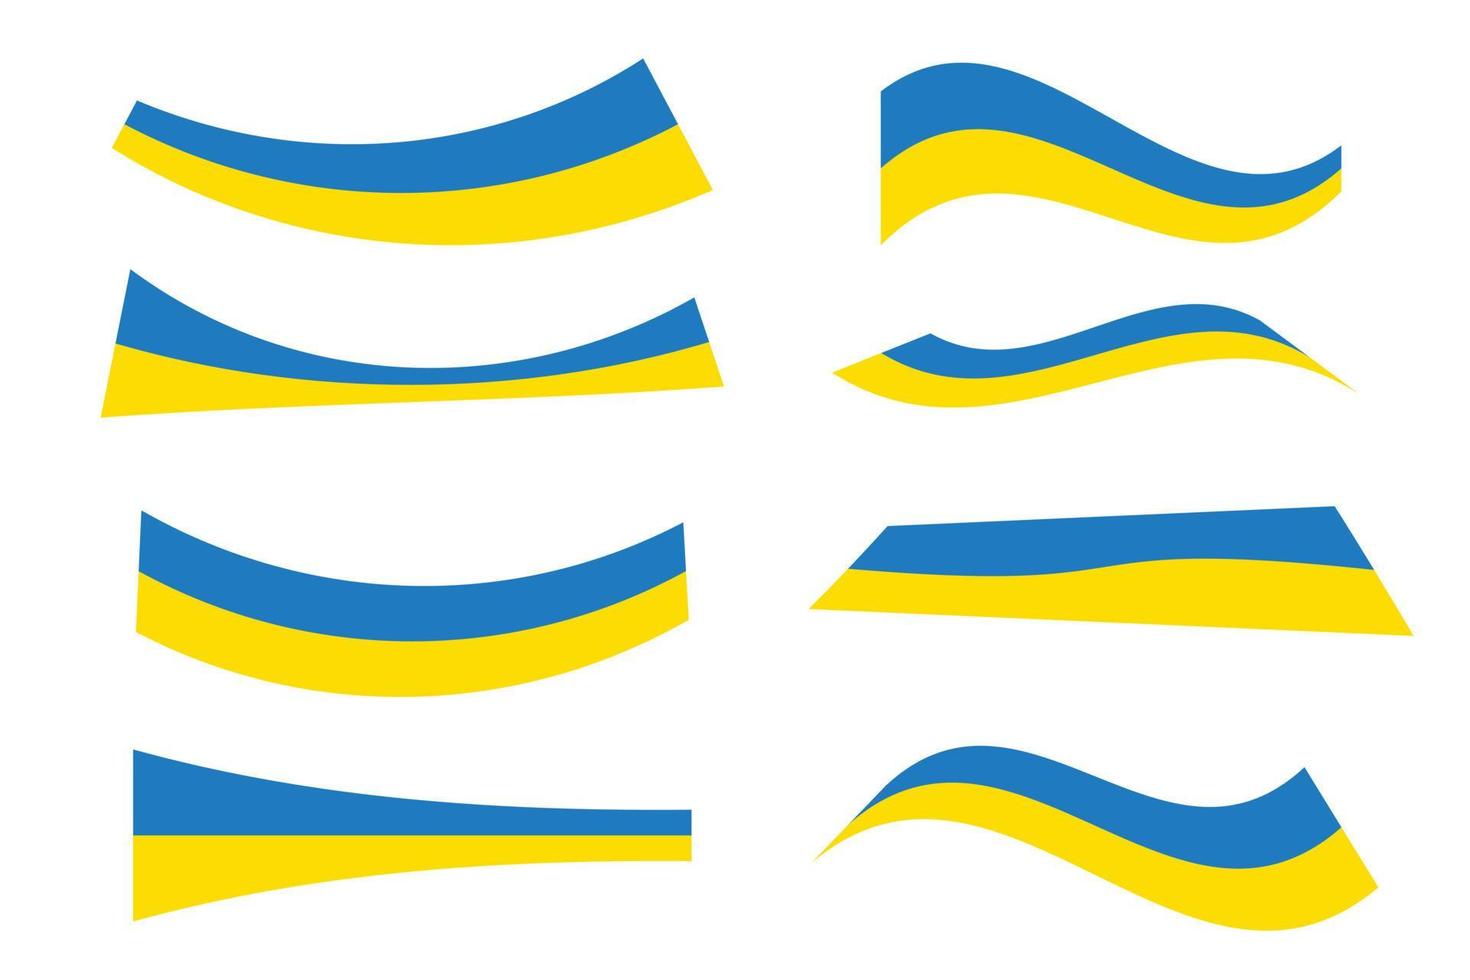 bandeira ucraniana - faixas horizontais amarelas e azuis. conjunto de símbolo de diferentes formas embrulhadas torcidas da ucrânia. coleção de bandeira ucraniana. vetor